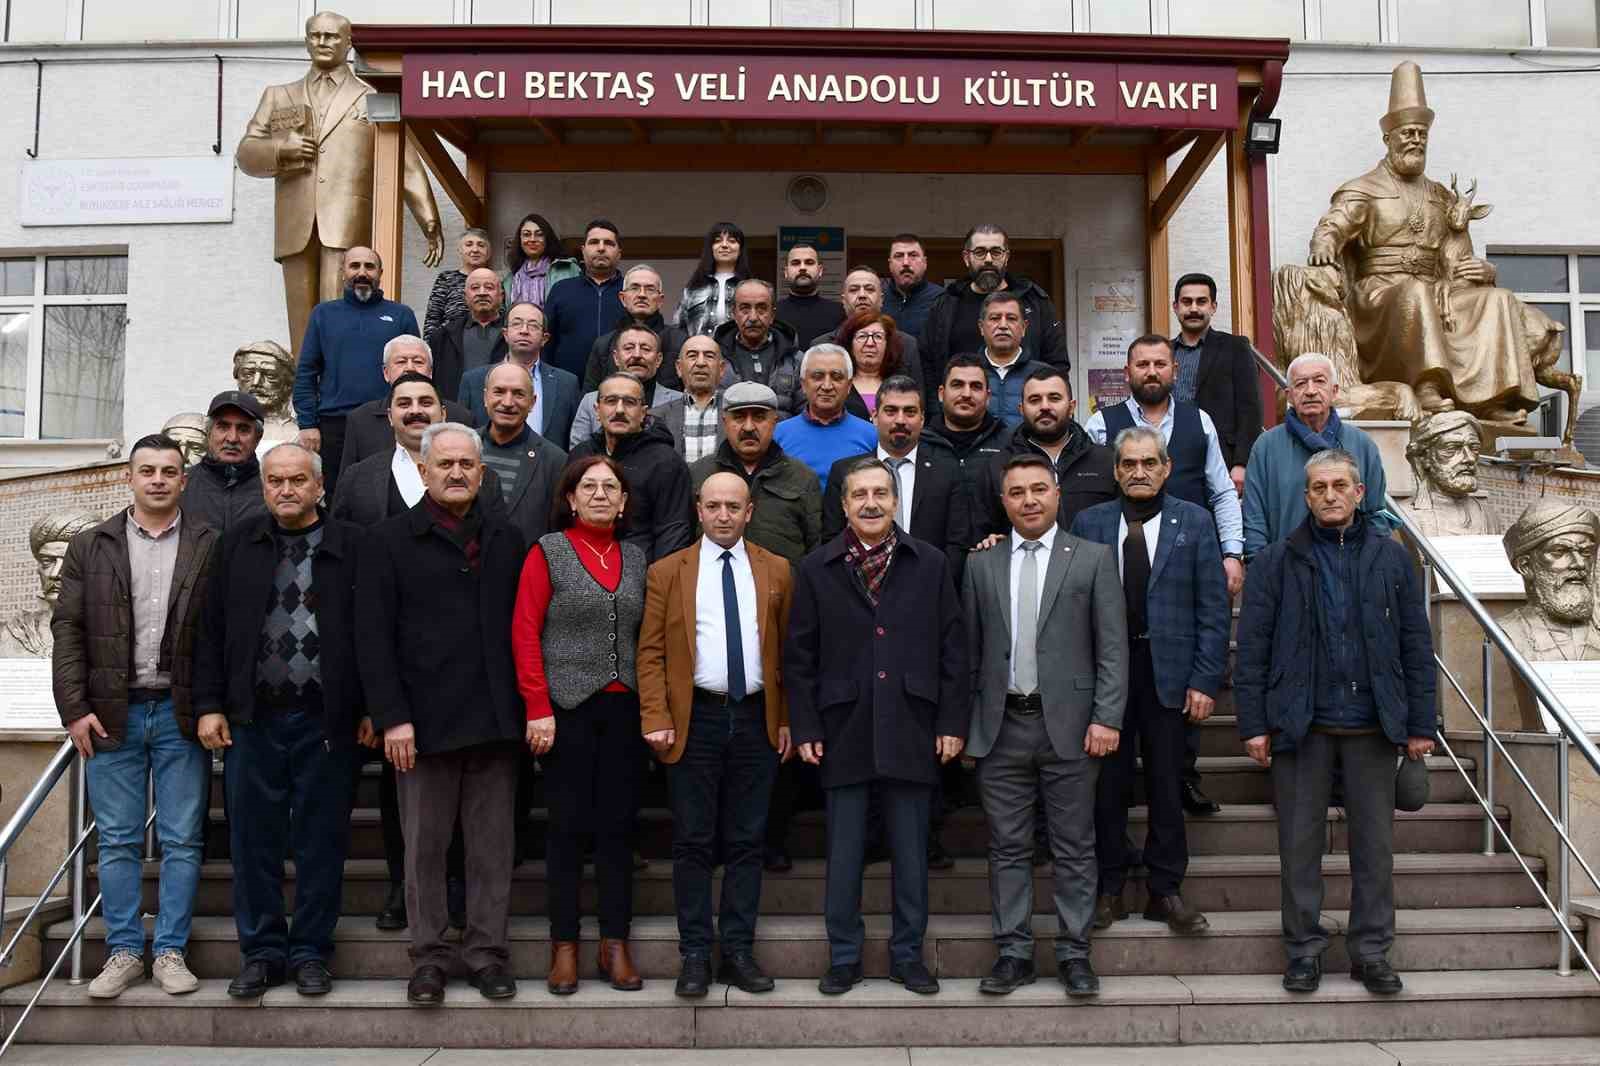 Tepebaşı Belediye Başkanı Ahmet Ataç, hayırlı olsun ziyaretlerine başladı